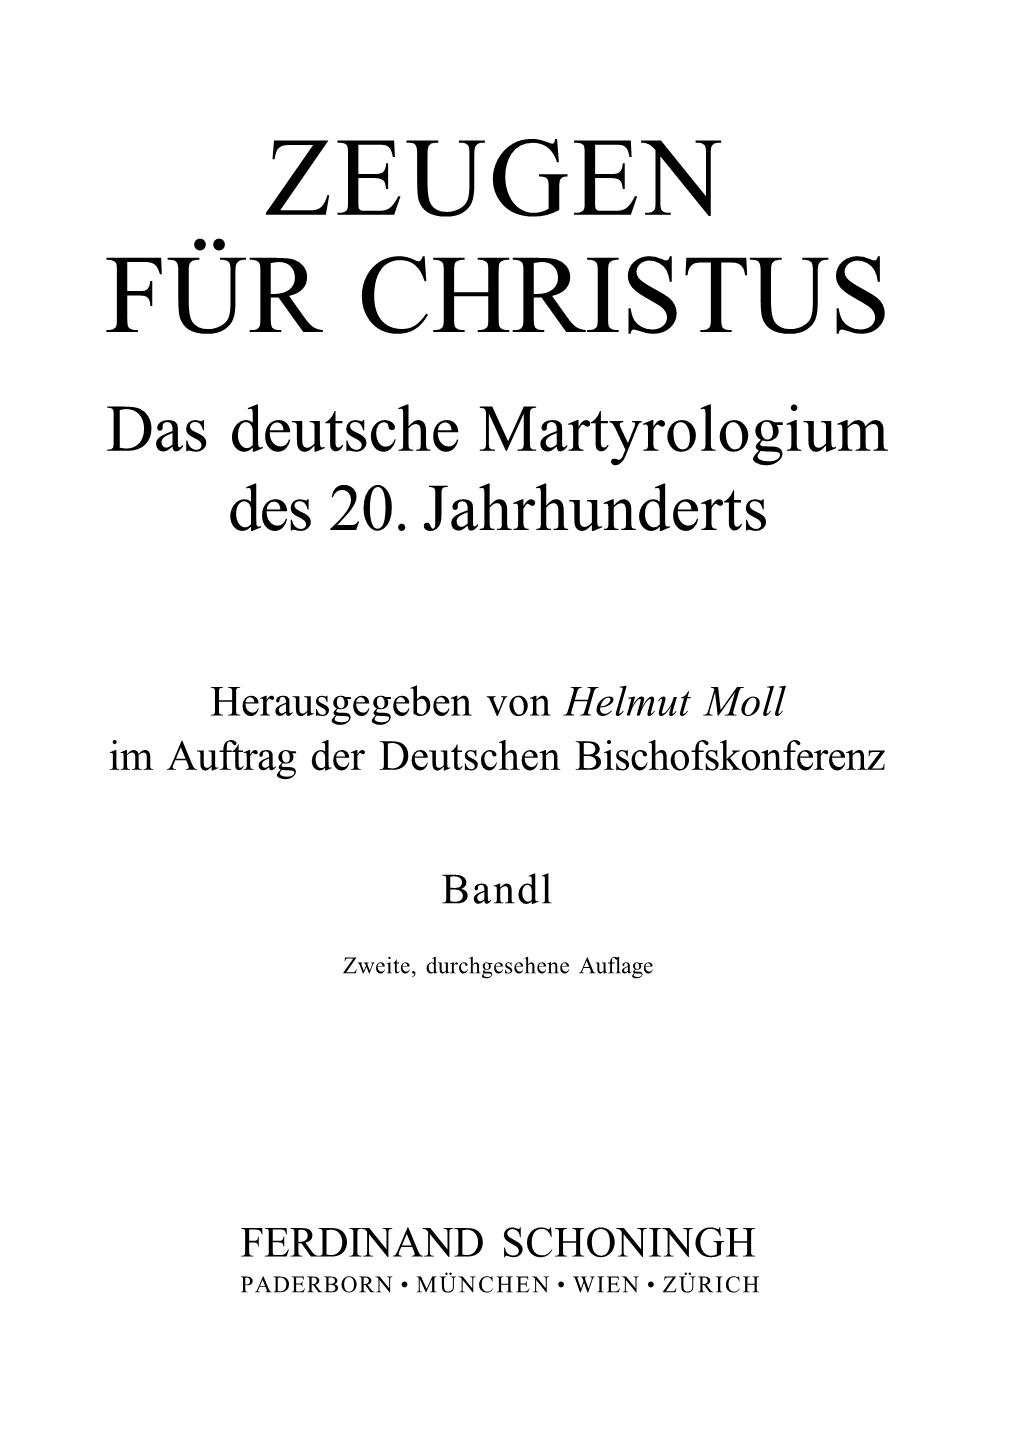 ZEUGEN FÜR CHRISTUS Das Deutsche Martyrologium Des 20